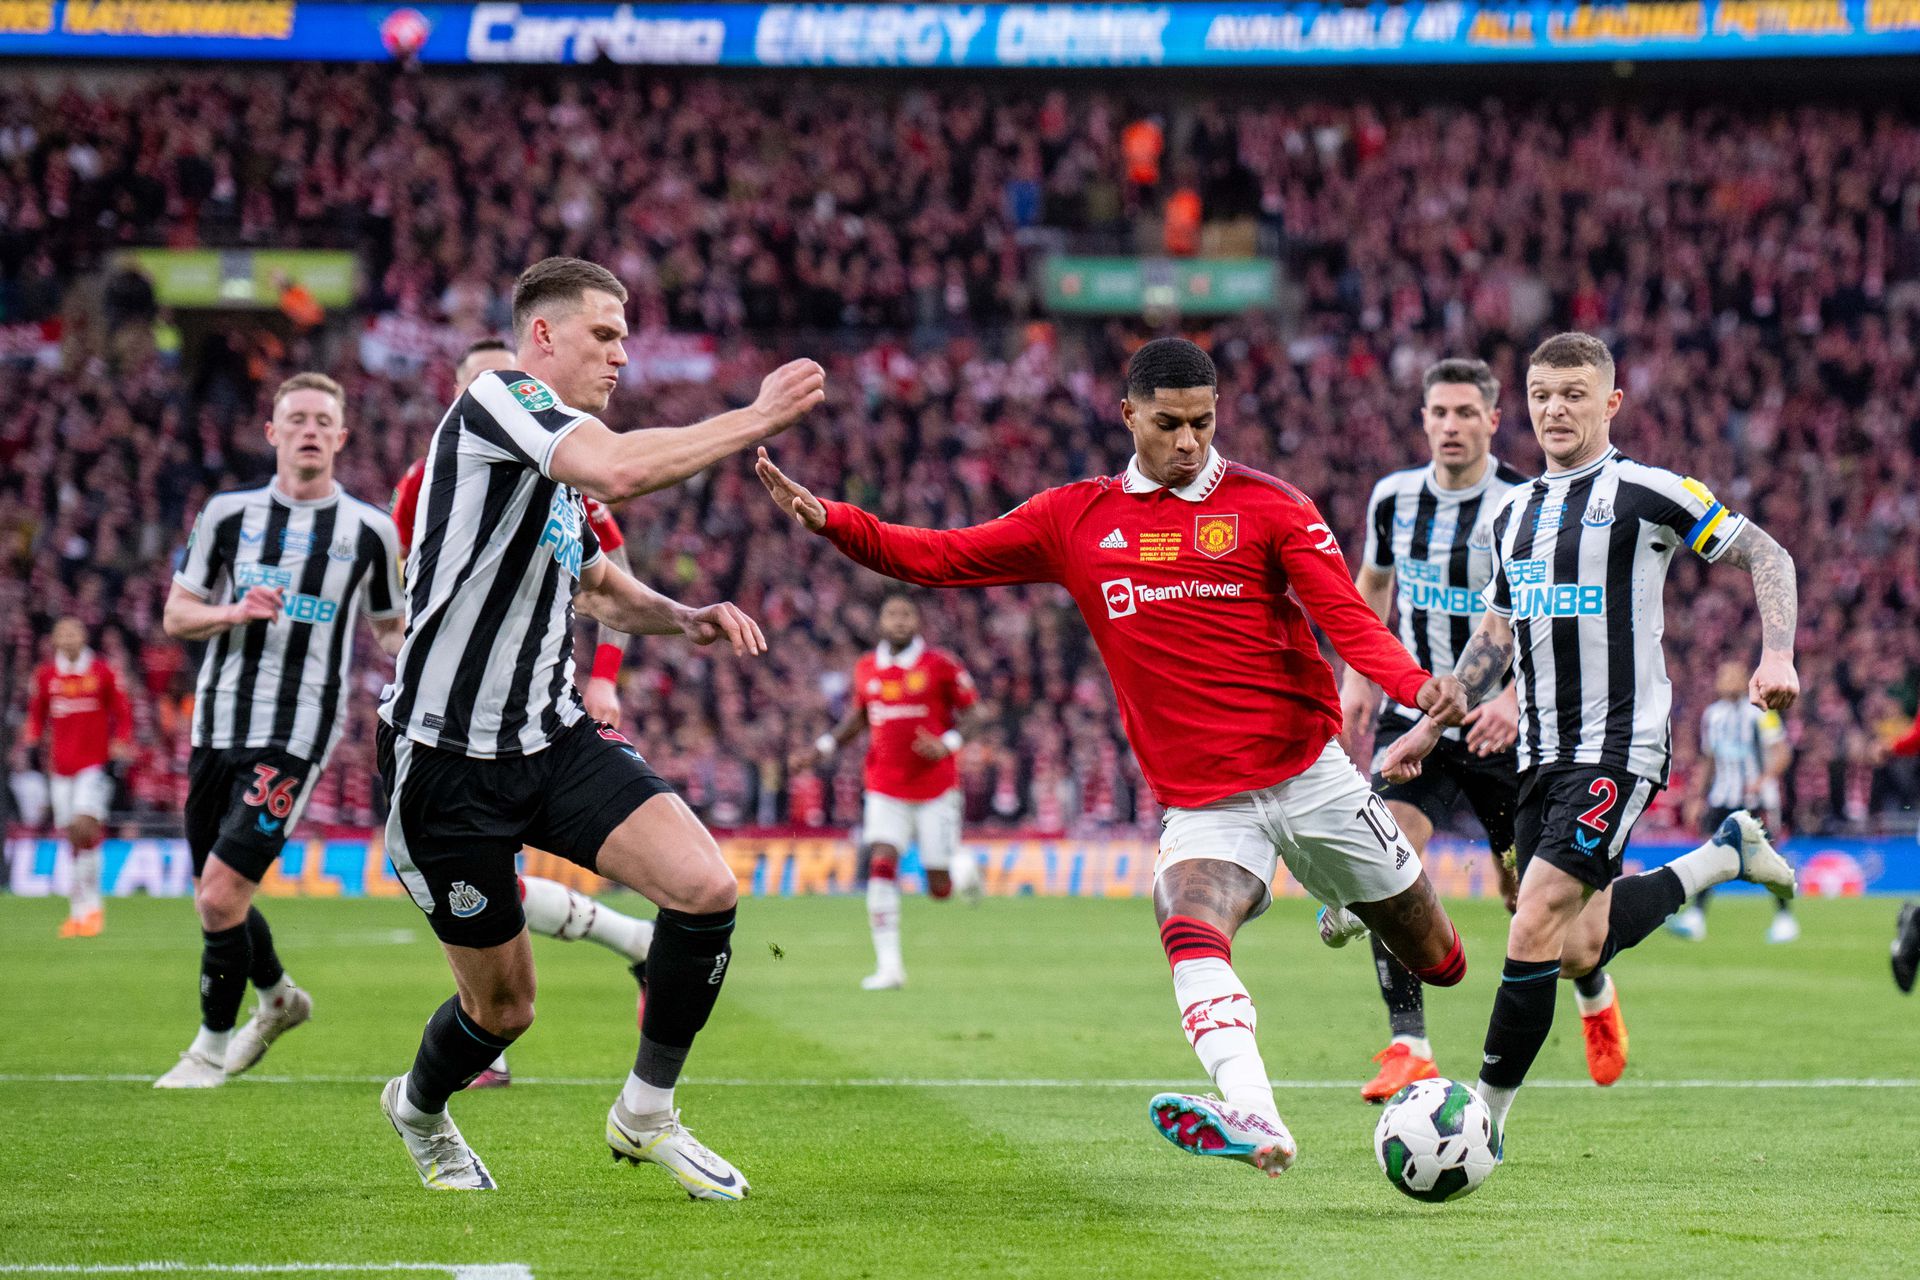 Marcus Rashford remekül futballozott a Newcastle ellen, az angol válogatott támadó az első félidőben gólig, a fordulás után ziccerig jutott. Fotó: Getty Images